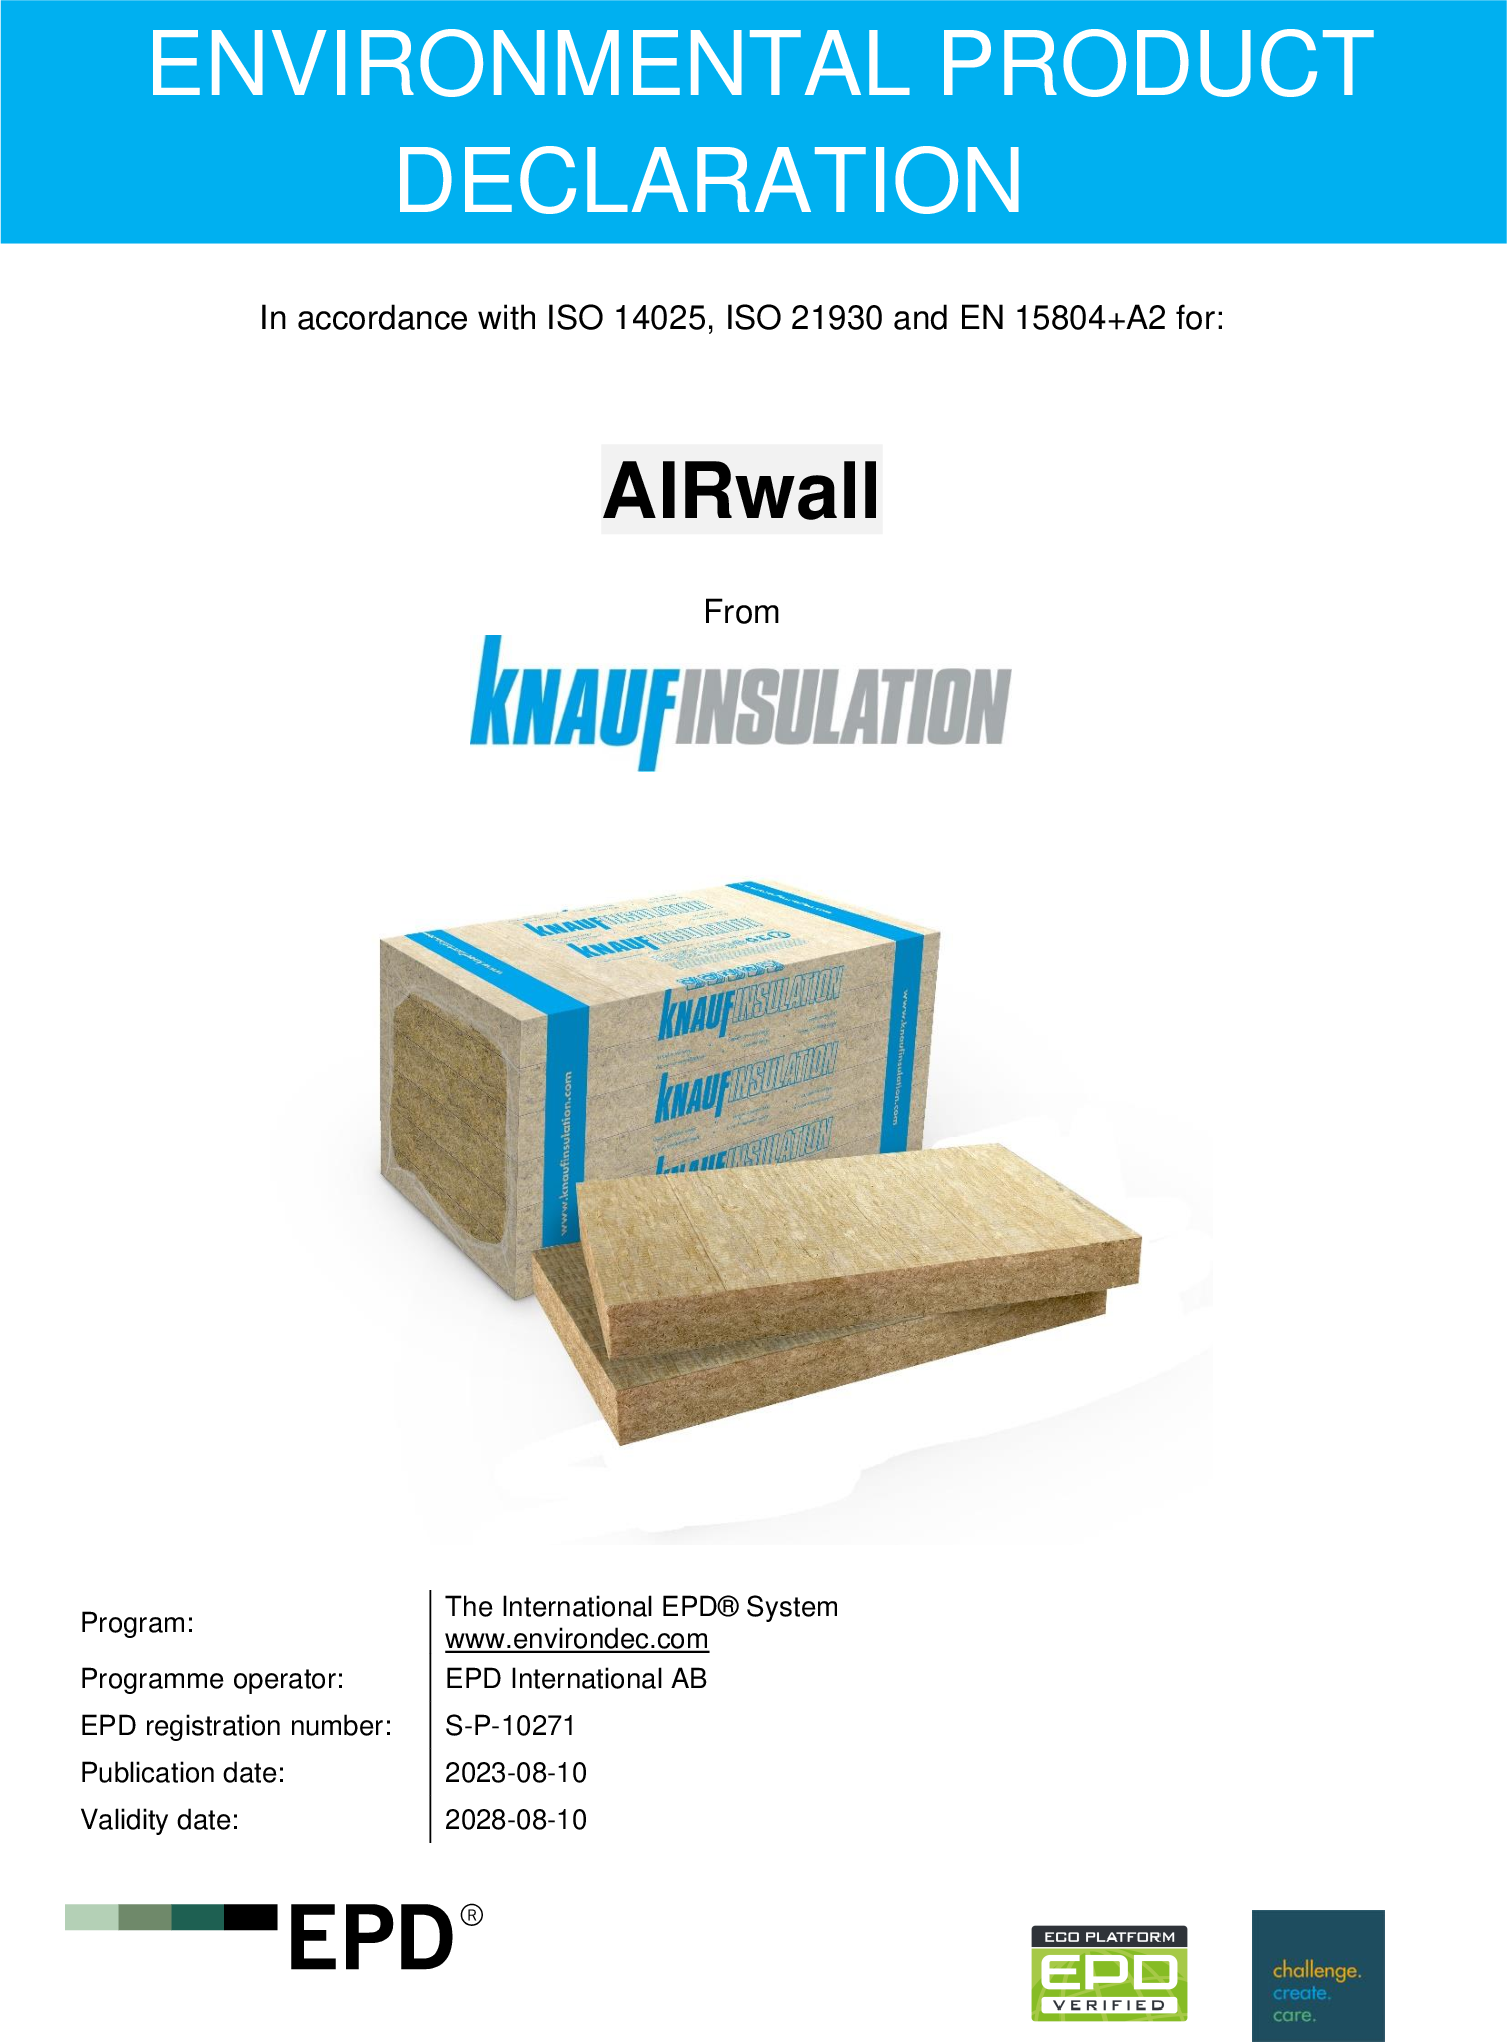 Enviromentální prohlášení o produktu (EPD) - AIRwall